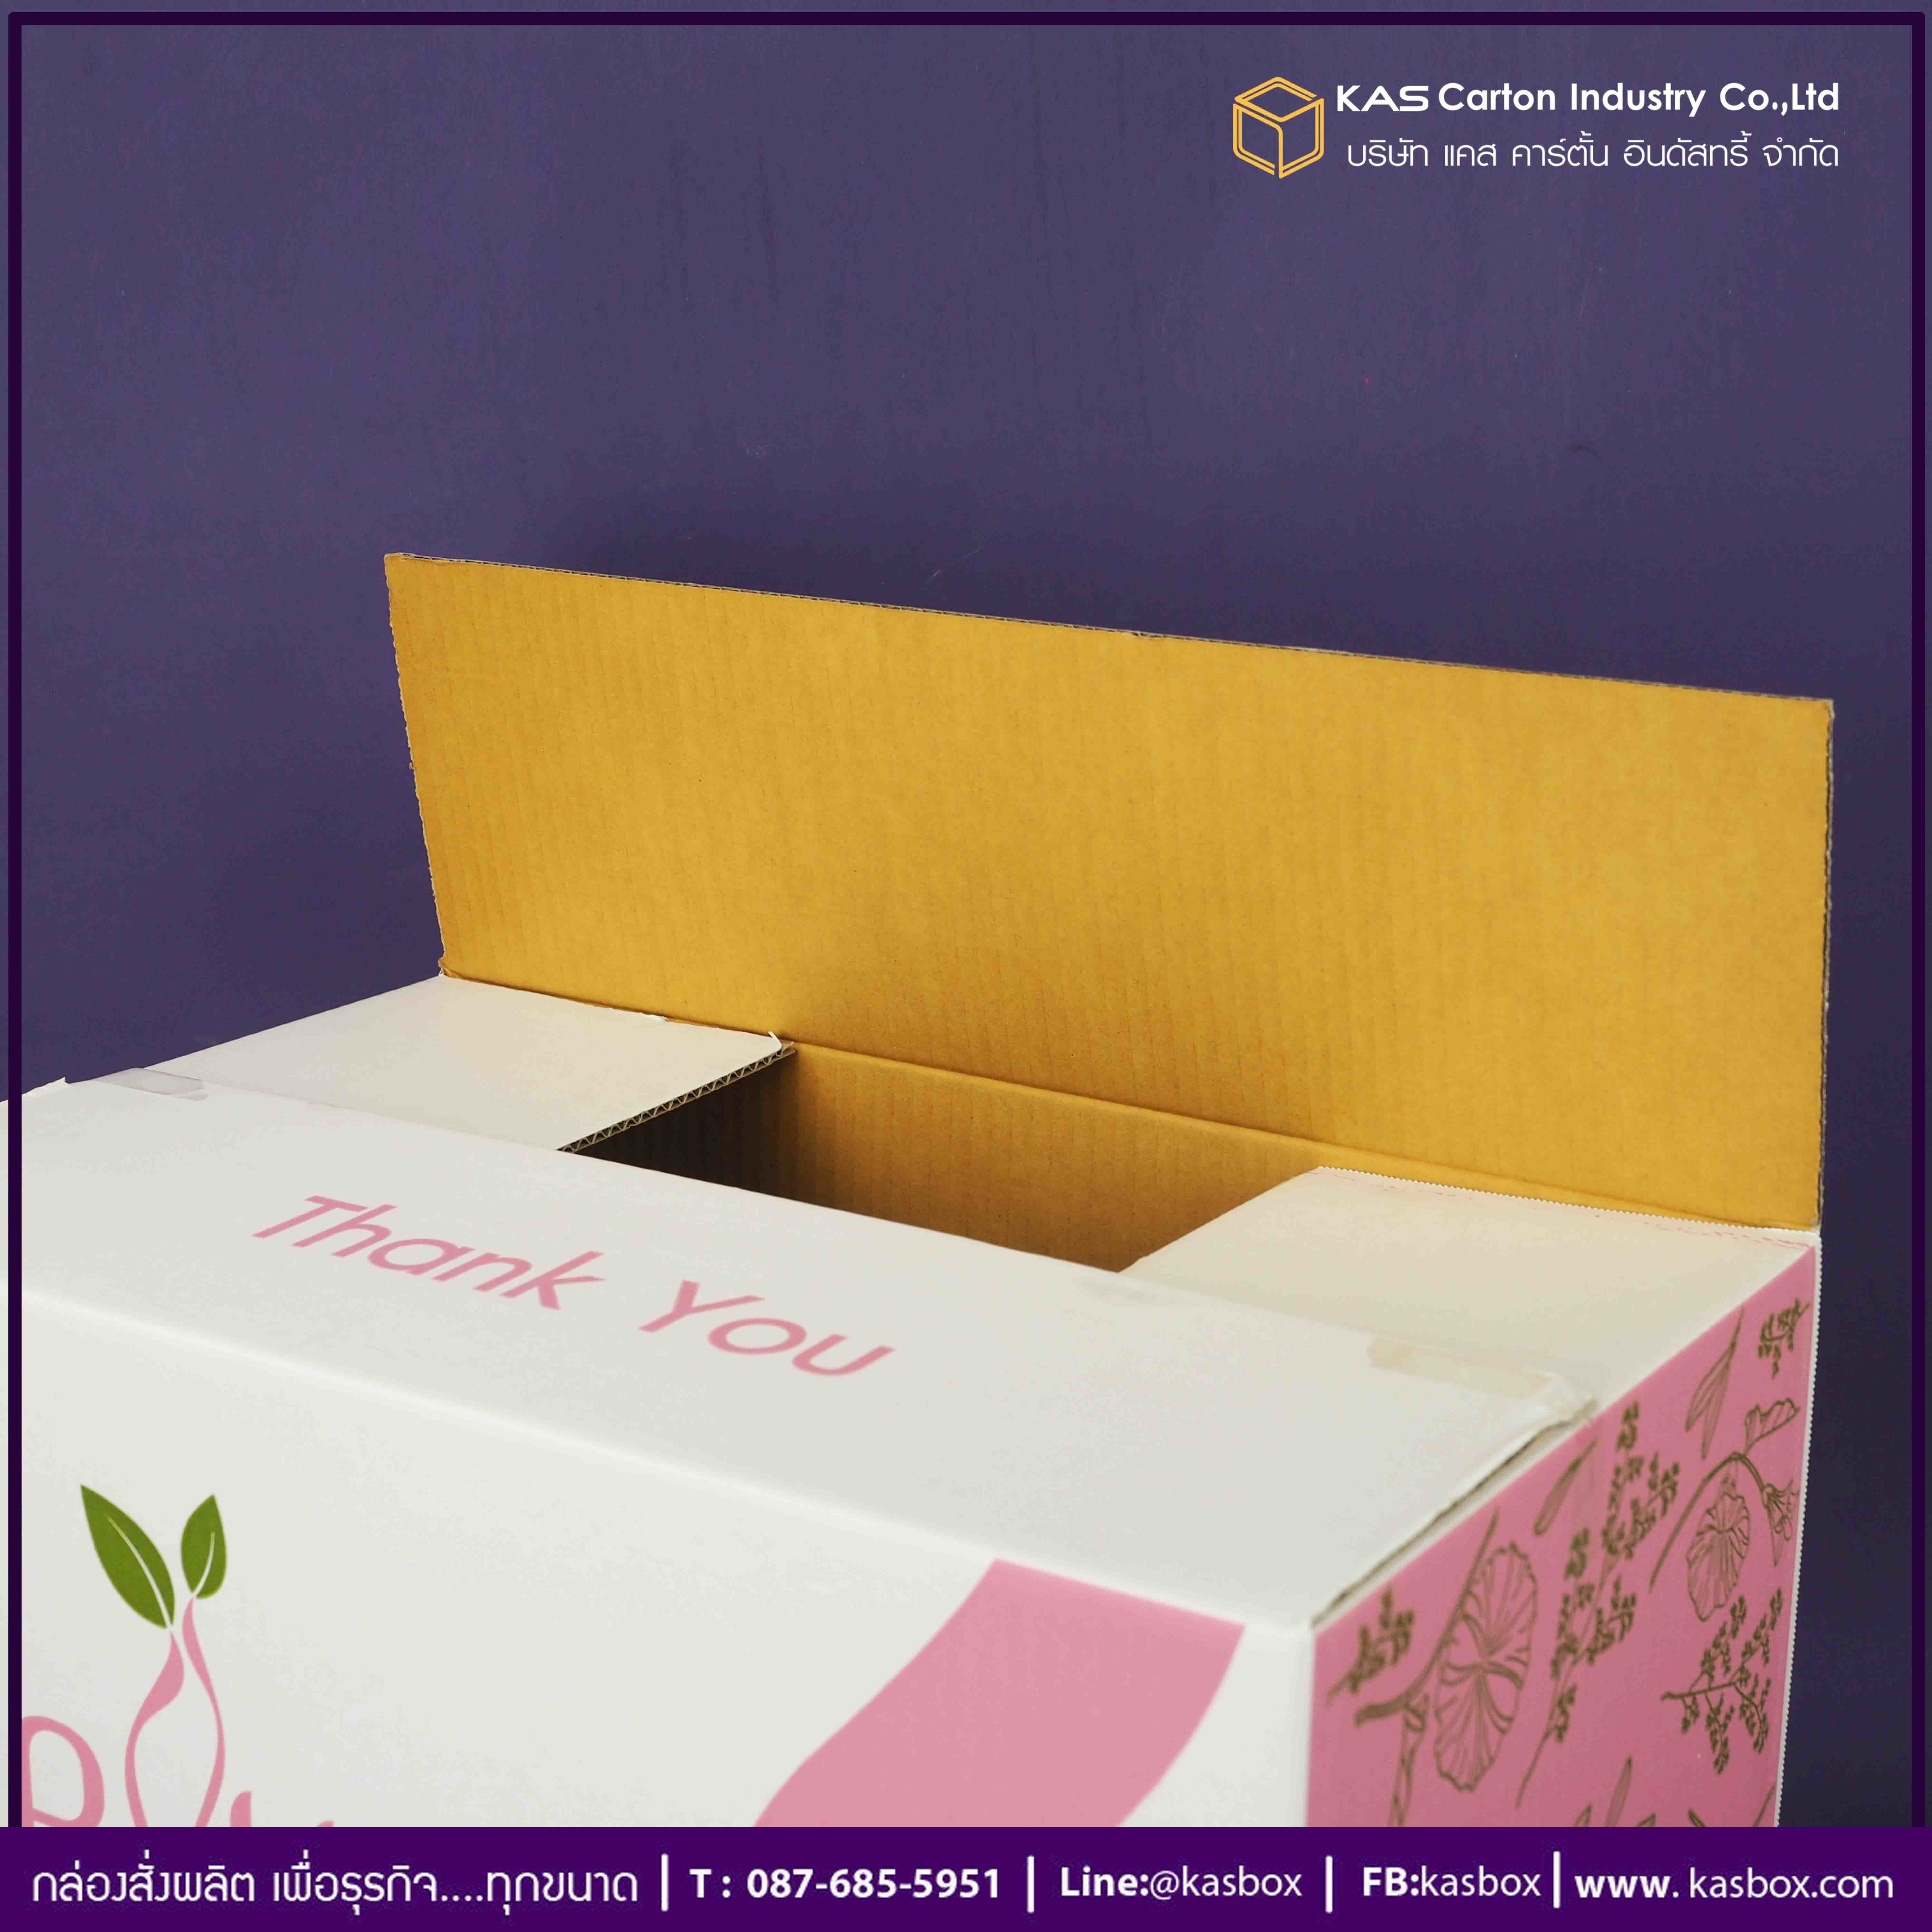 กล่องกระดาษลูกฟูก กล่อง อาหารเสริม กล่องกระดาษลูกฟูก SME